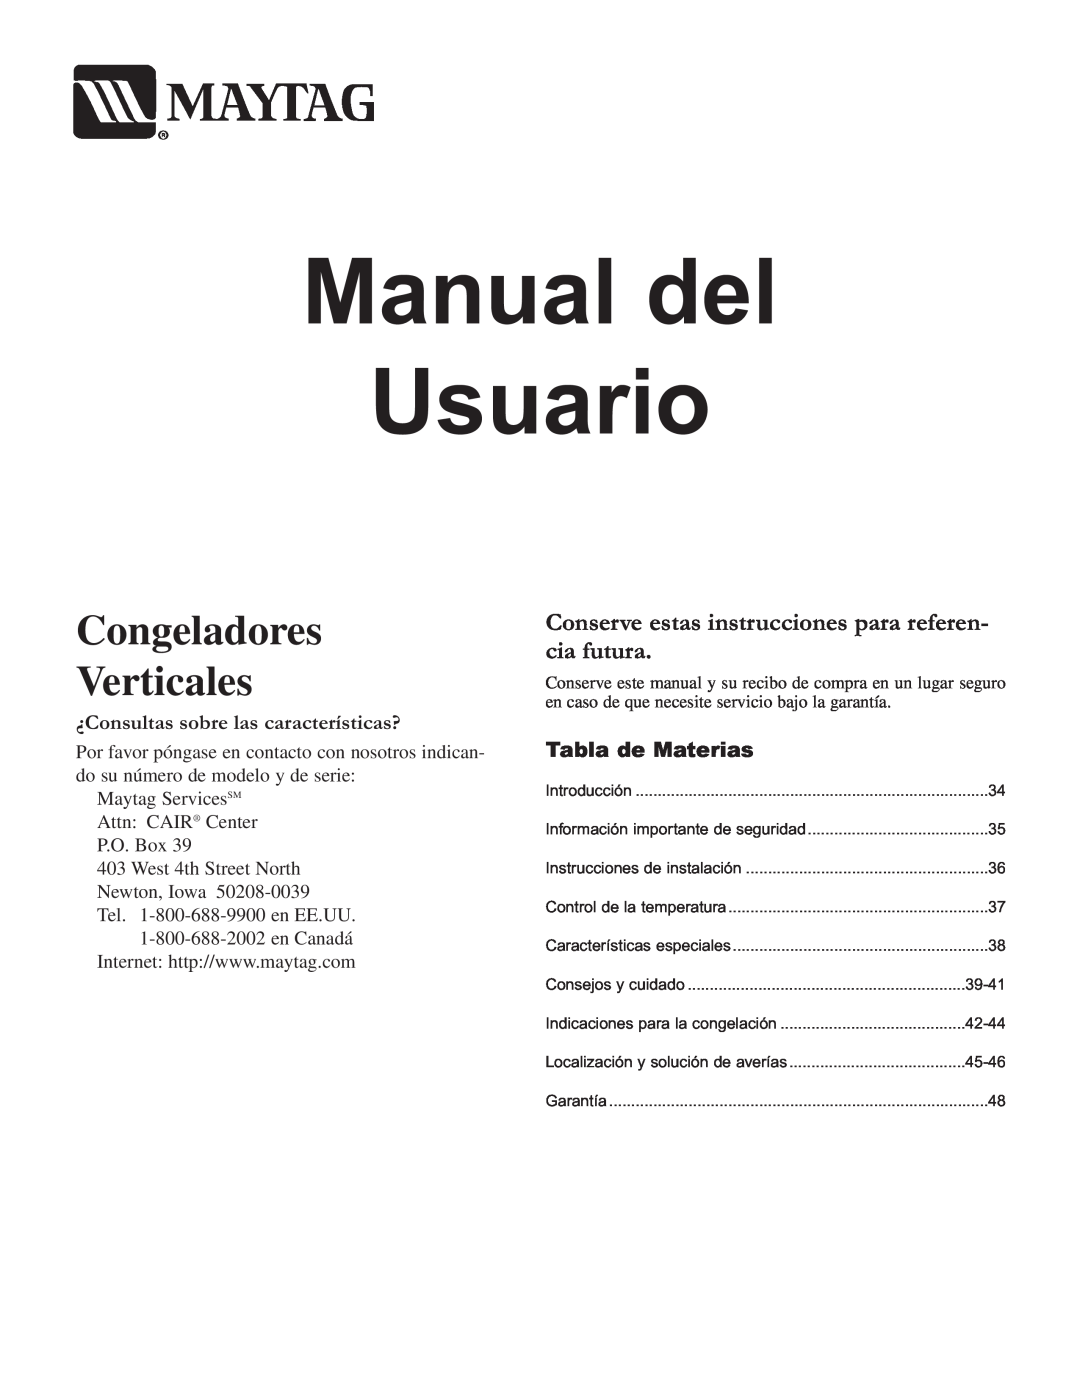 Maytag Upright Freezers owner manual Manual del, Usuario, Congeladores Verticales, ¿Consultas sobre las características? 